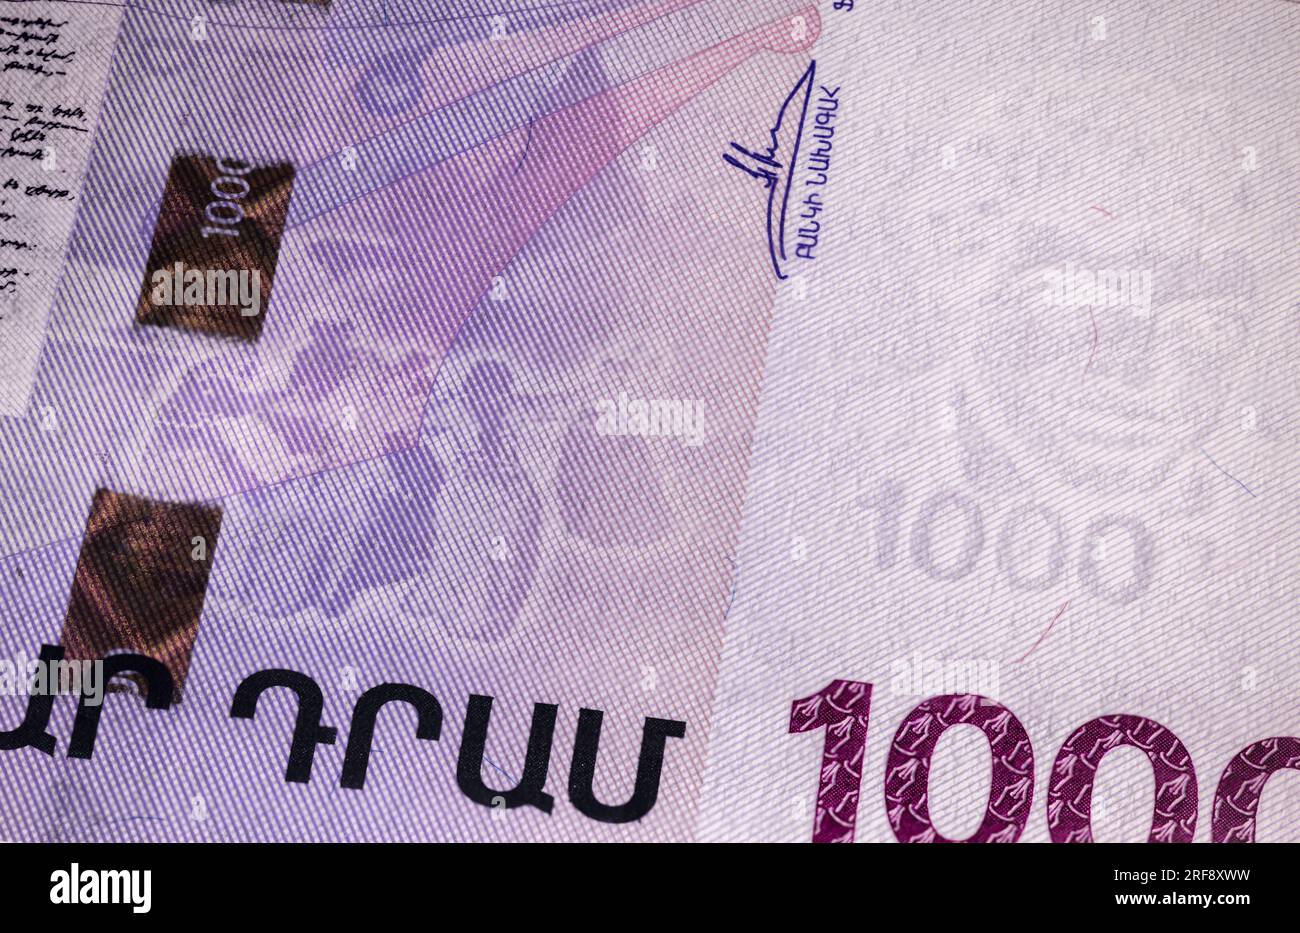 Aserbaidschan-1000-Manat-Banknote: Nationale Symbole, Wahrzeichen, kulturelle Motive, lebendige Farben, komplexe Muster - ein künstlerischer Ausdruck des nationalen Stockfoto